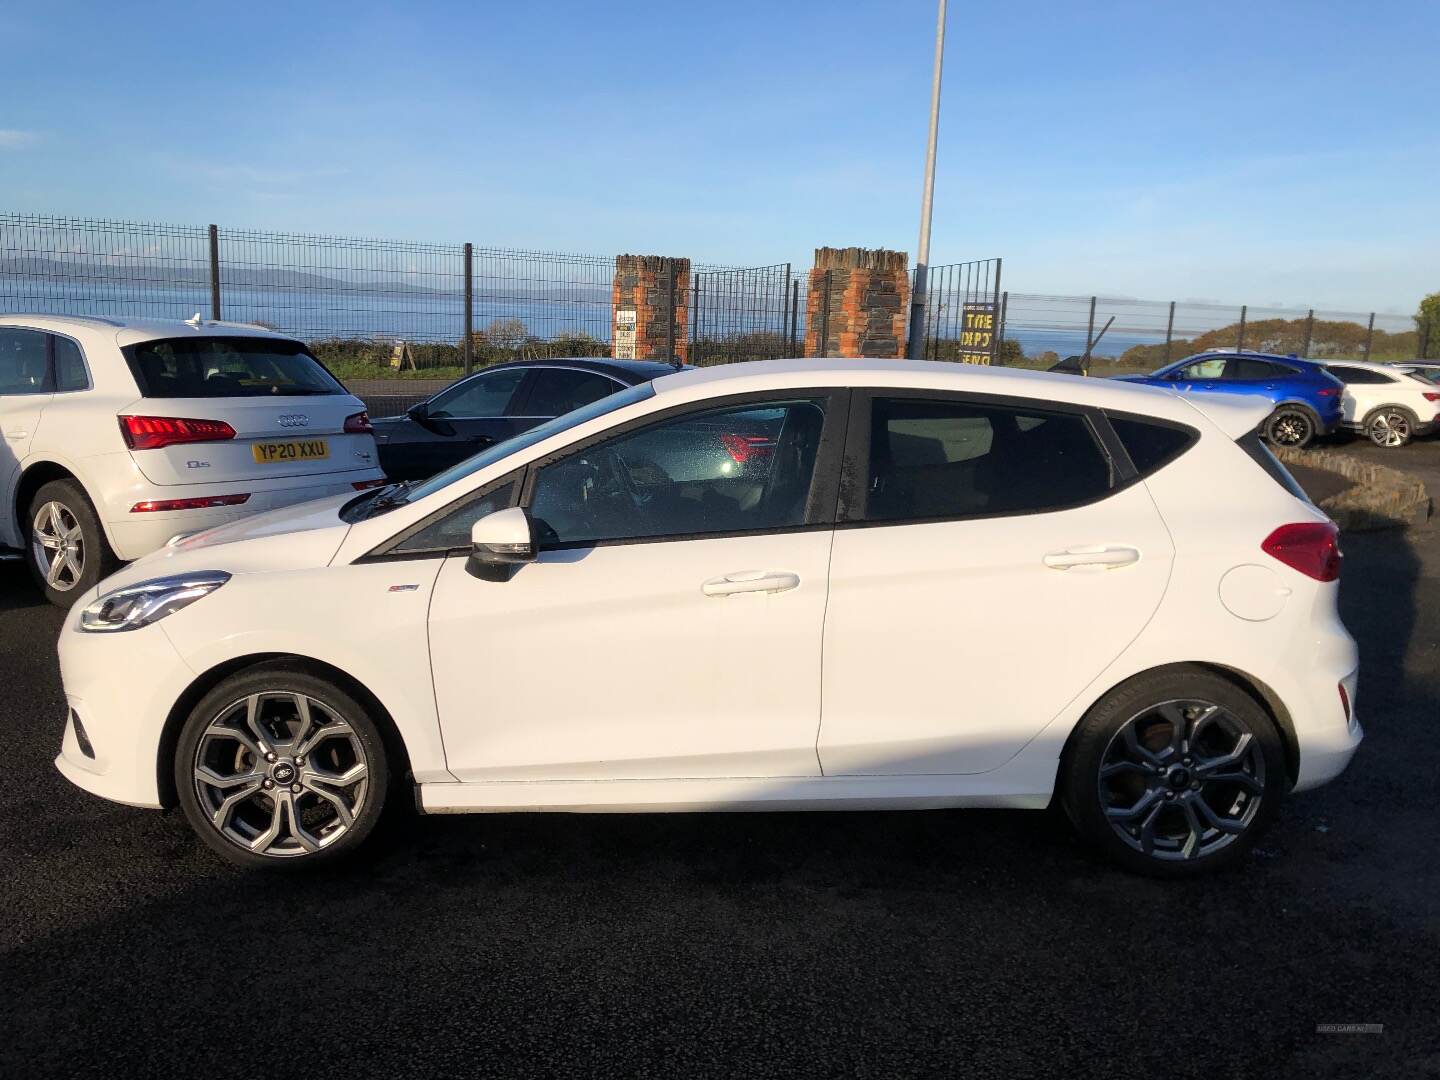 Ford Fiesta HATCHBACK in Derry / Londonderry